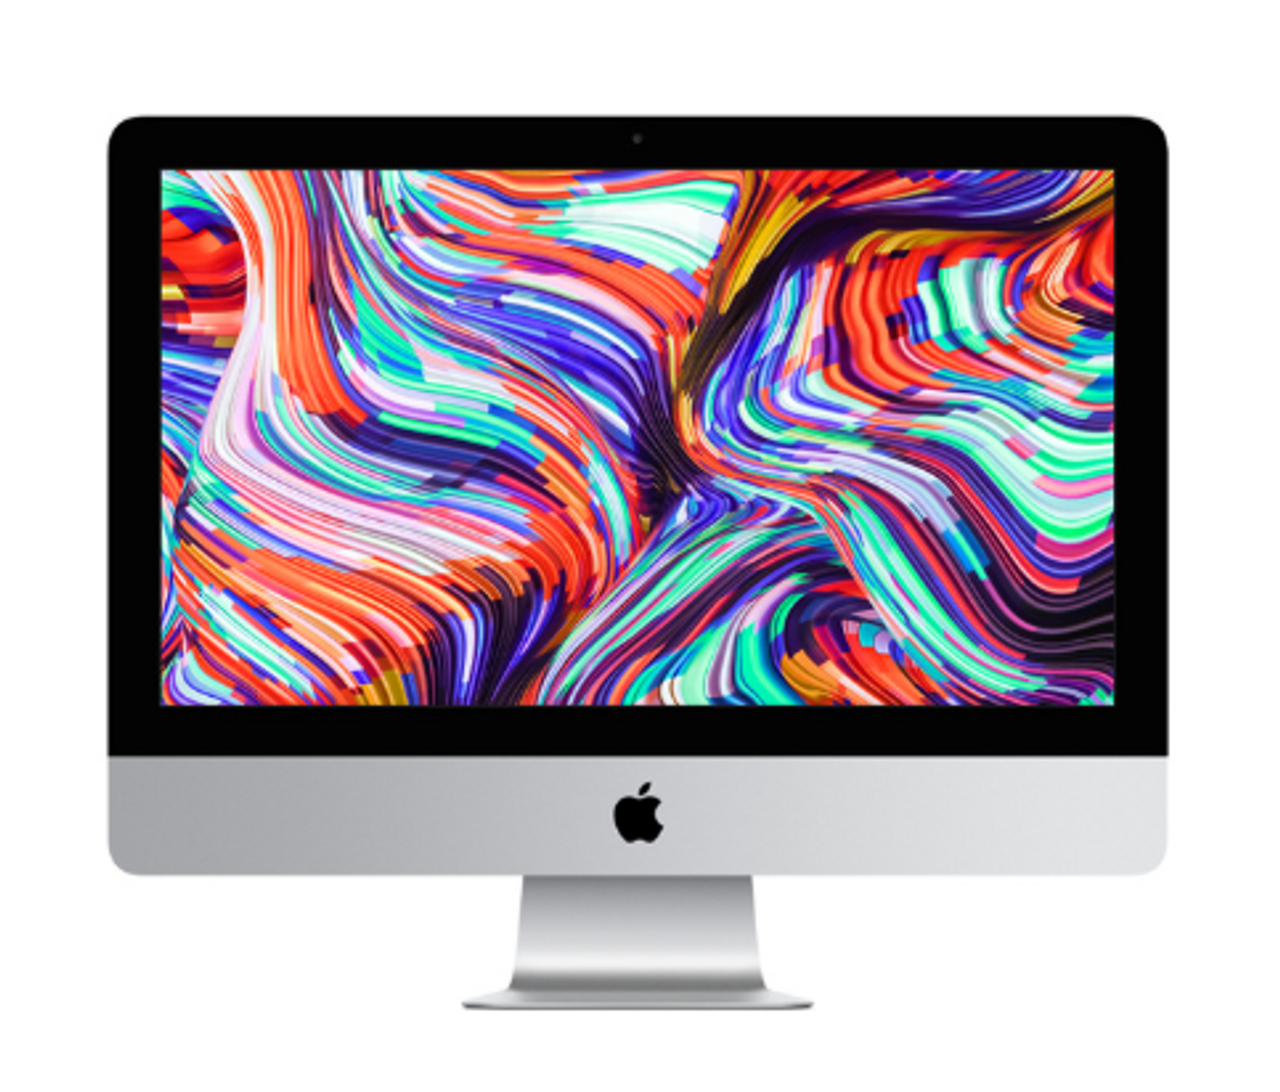 Restored 2019 Apple iMac Intel Core i7 3.2GHz 8GB RAM 1TB SSD Silver - MRT32LL/A (CTO) - Grade Refurbished - Walmart.com